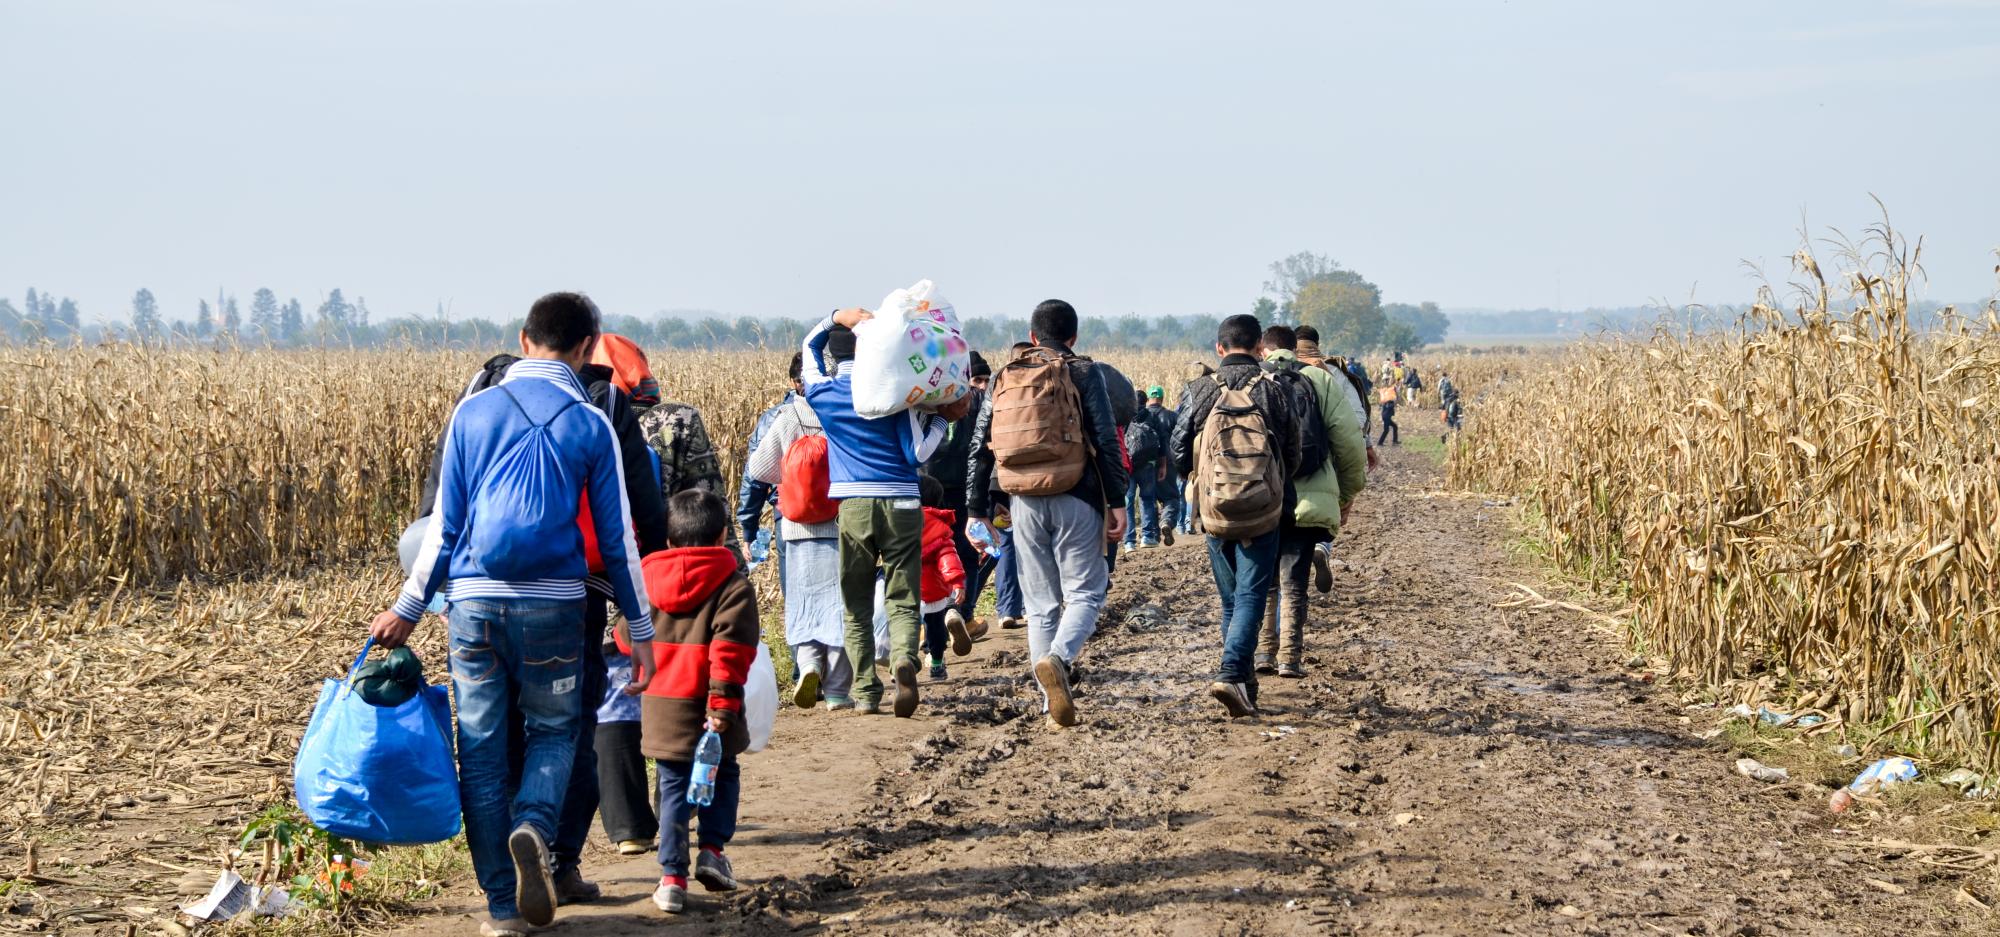 Families seeking refuge walking across fields